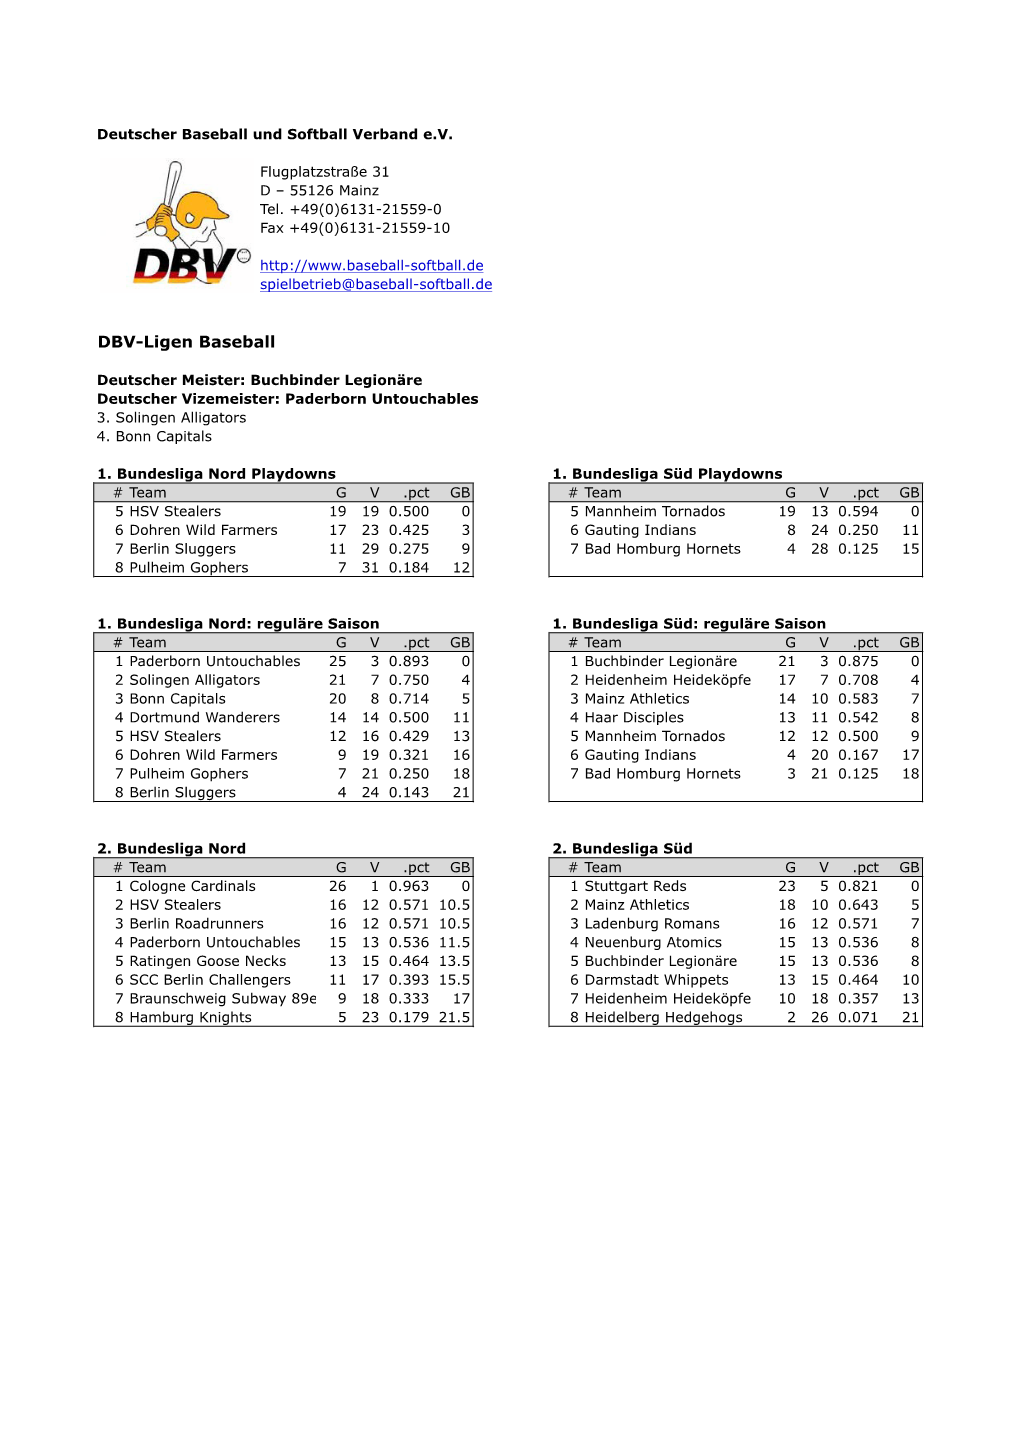 Abschlusstabellen DBV-Ligen 2011